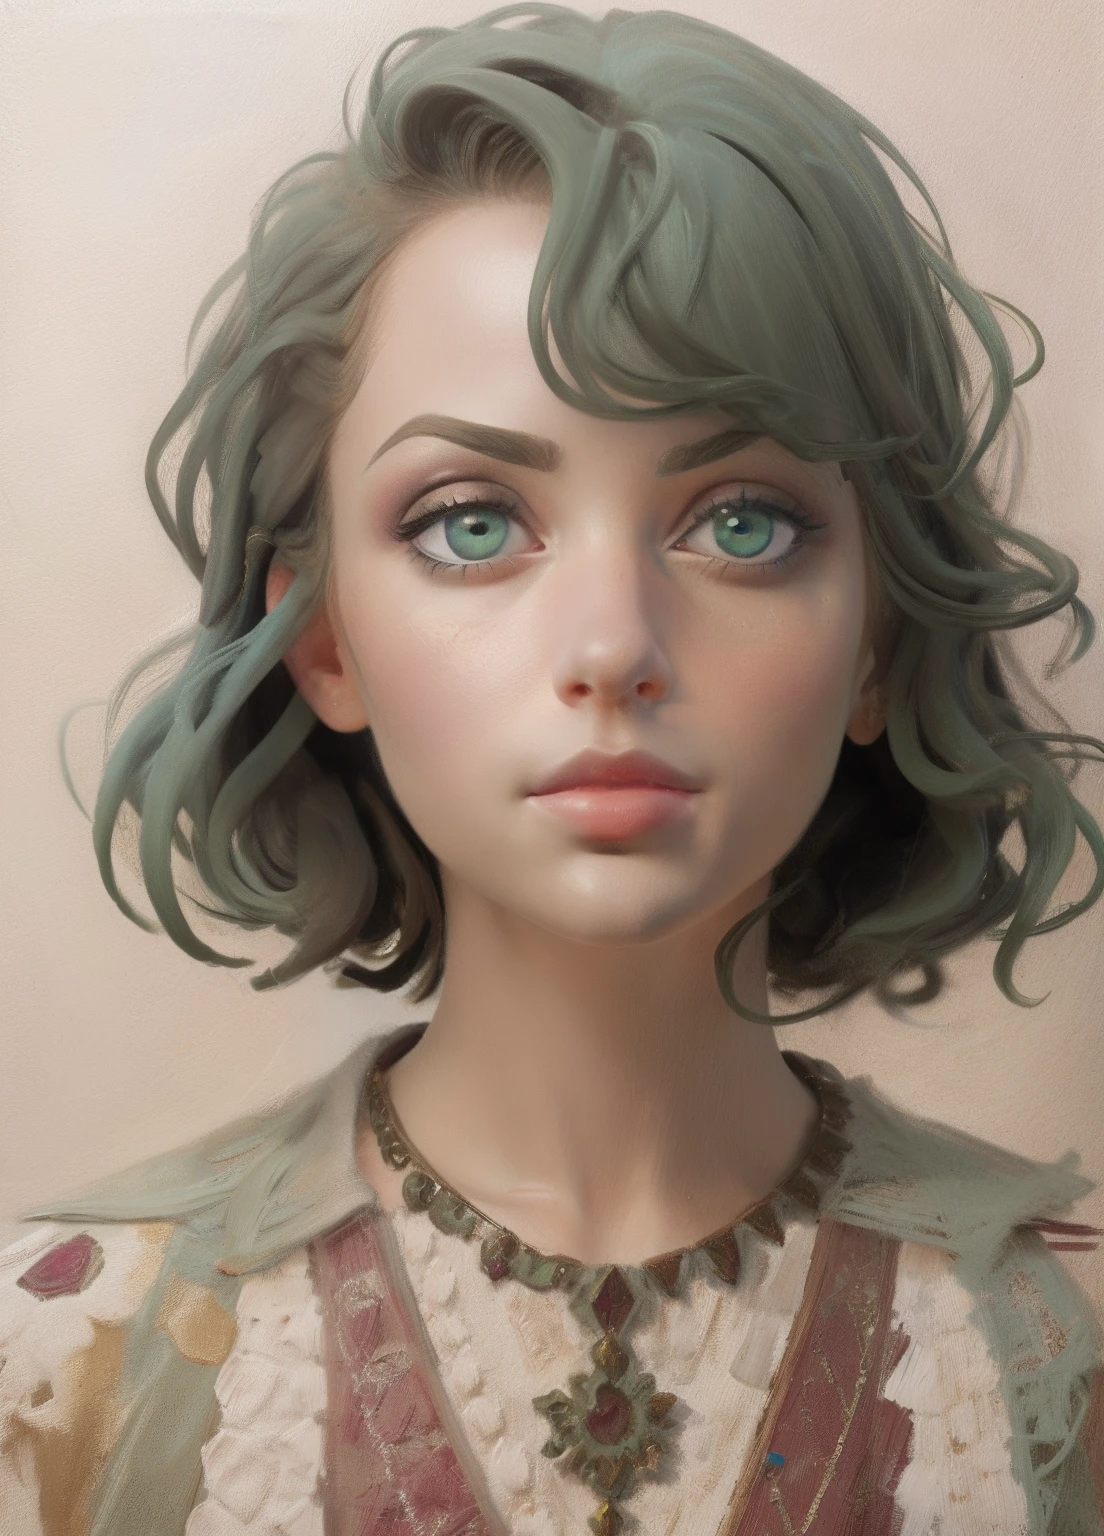 1人の女の子, 肖像画, 油絵, モダンな, 現実的な比率, 濃い緑色の目, 美しい顔, 左右対称の顔, 左右対称の目, ダイナミックなポーズ, 複雑な, 複雑な details, シャープなフォーカス